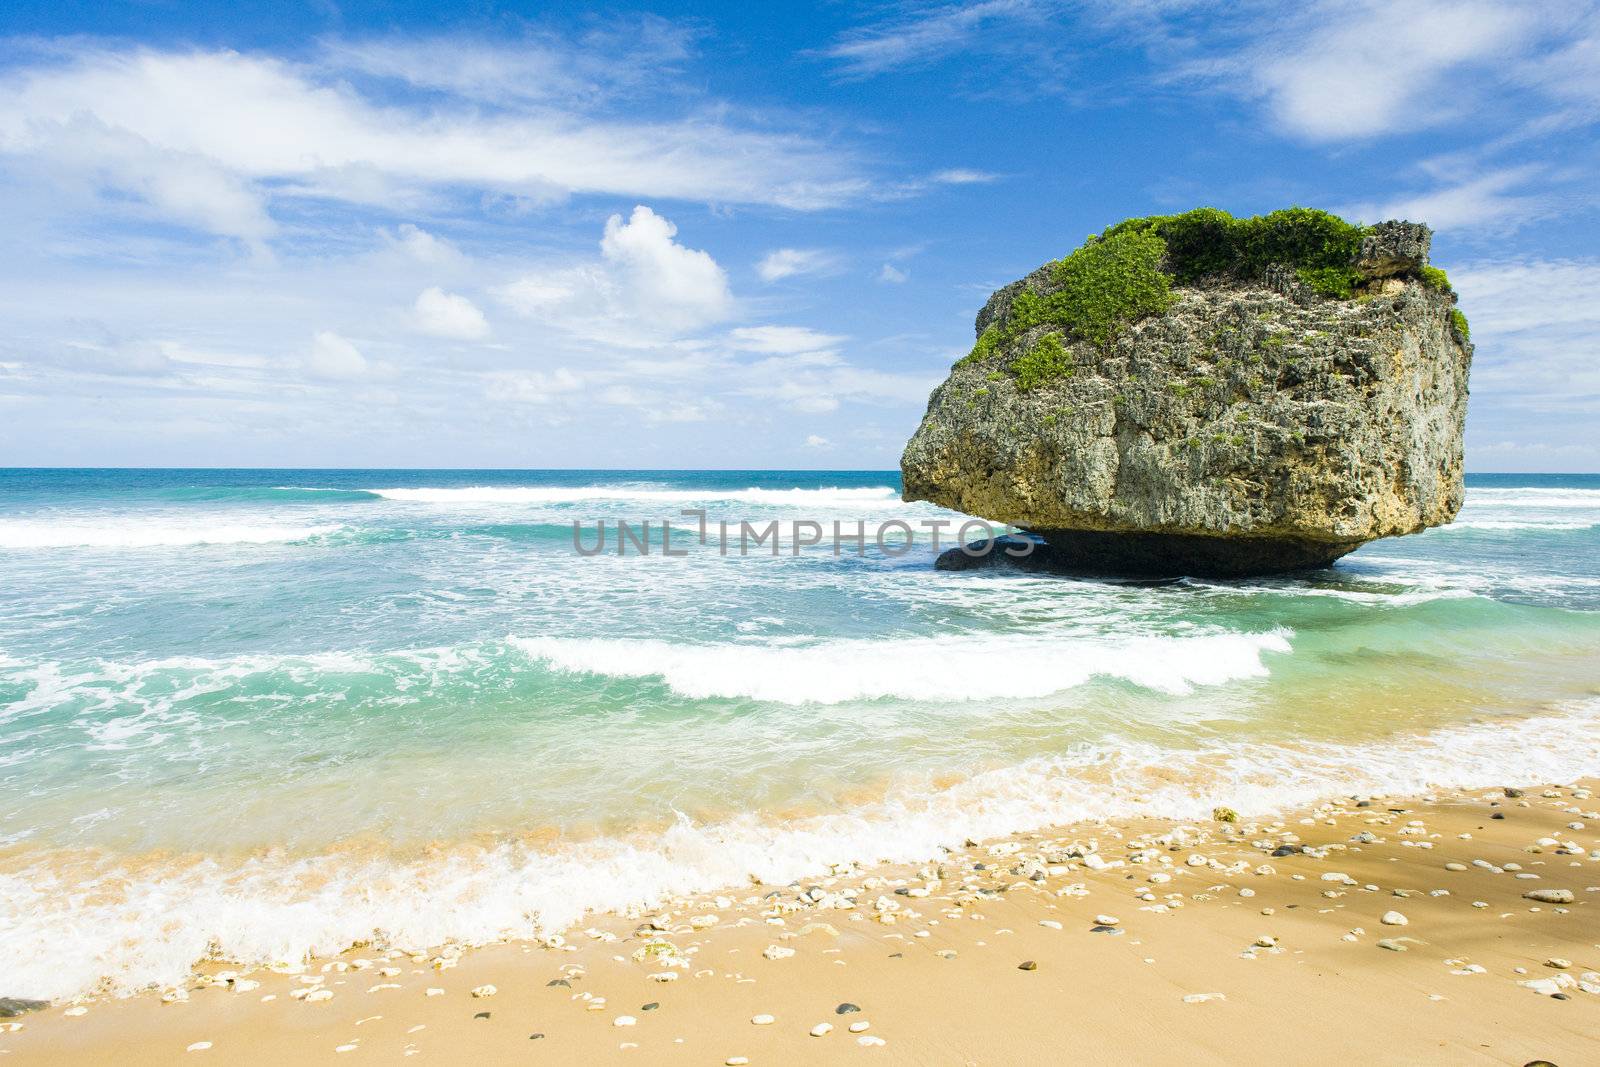 Bathsheba, Eastern coast of Barbados, Caribbean by phbcz